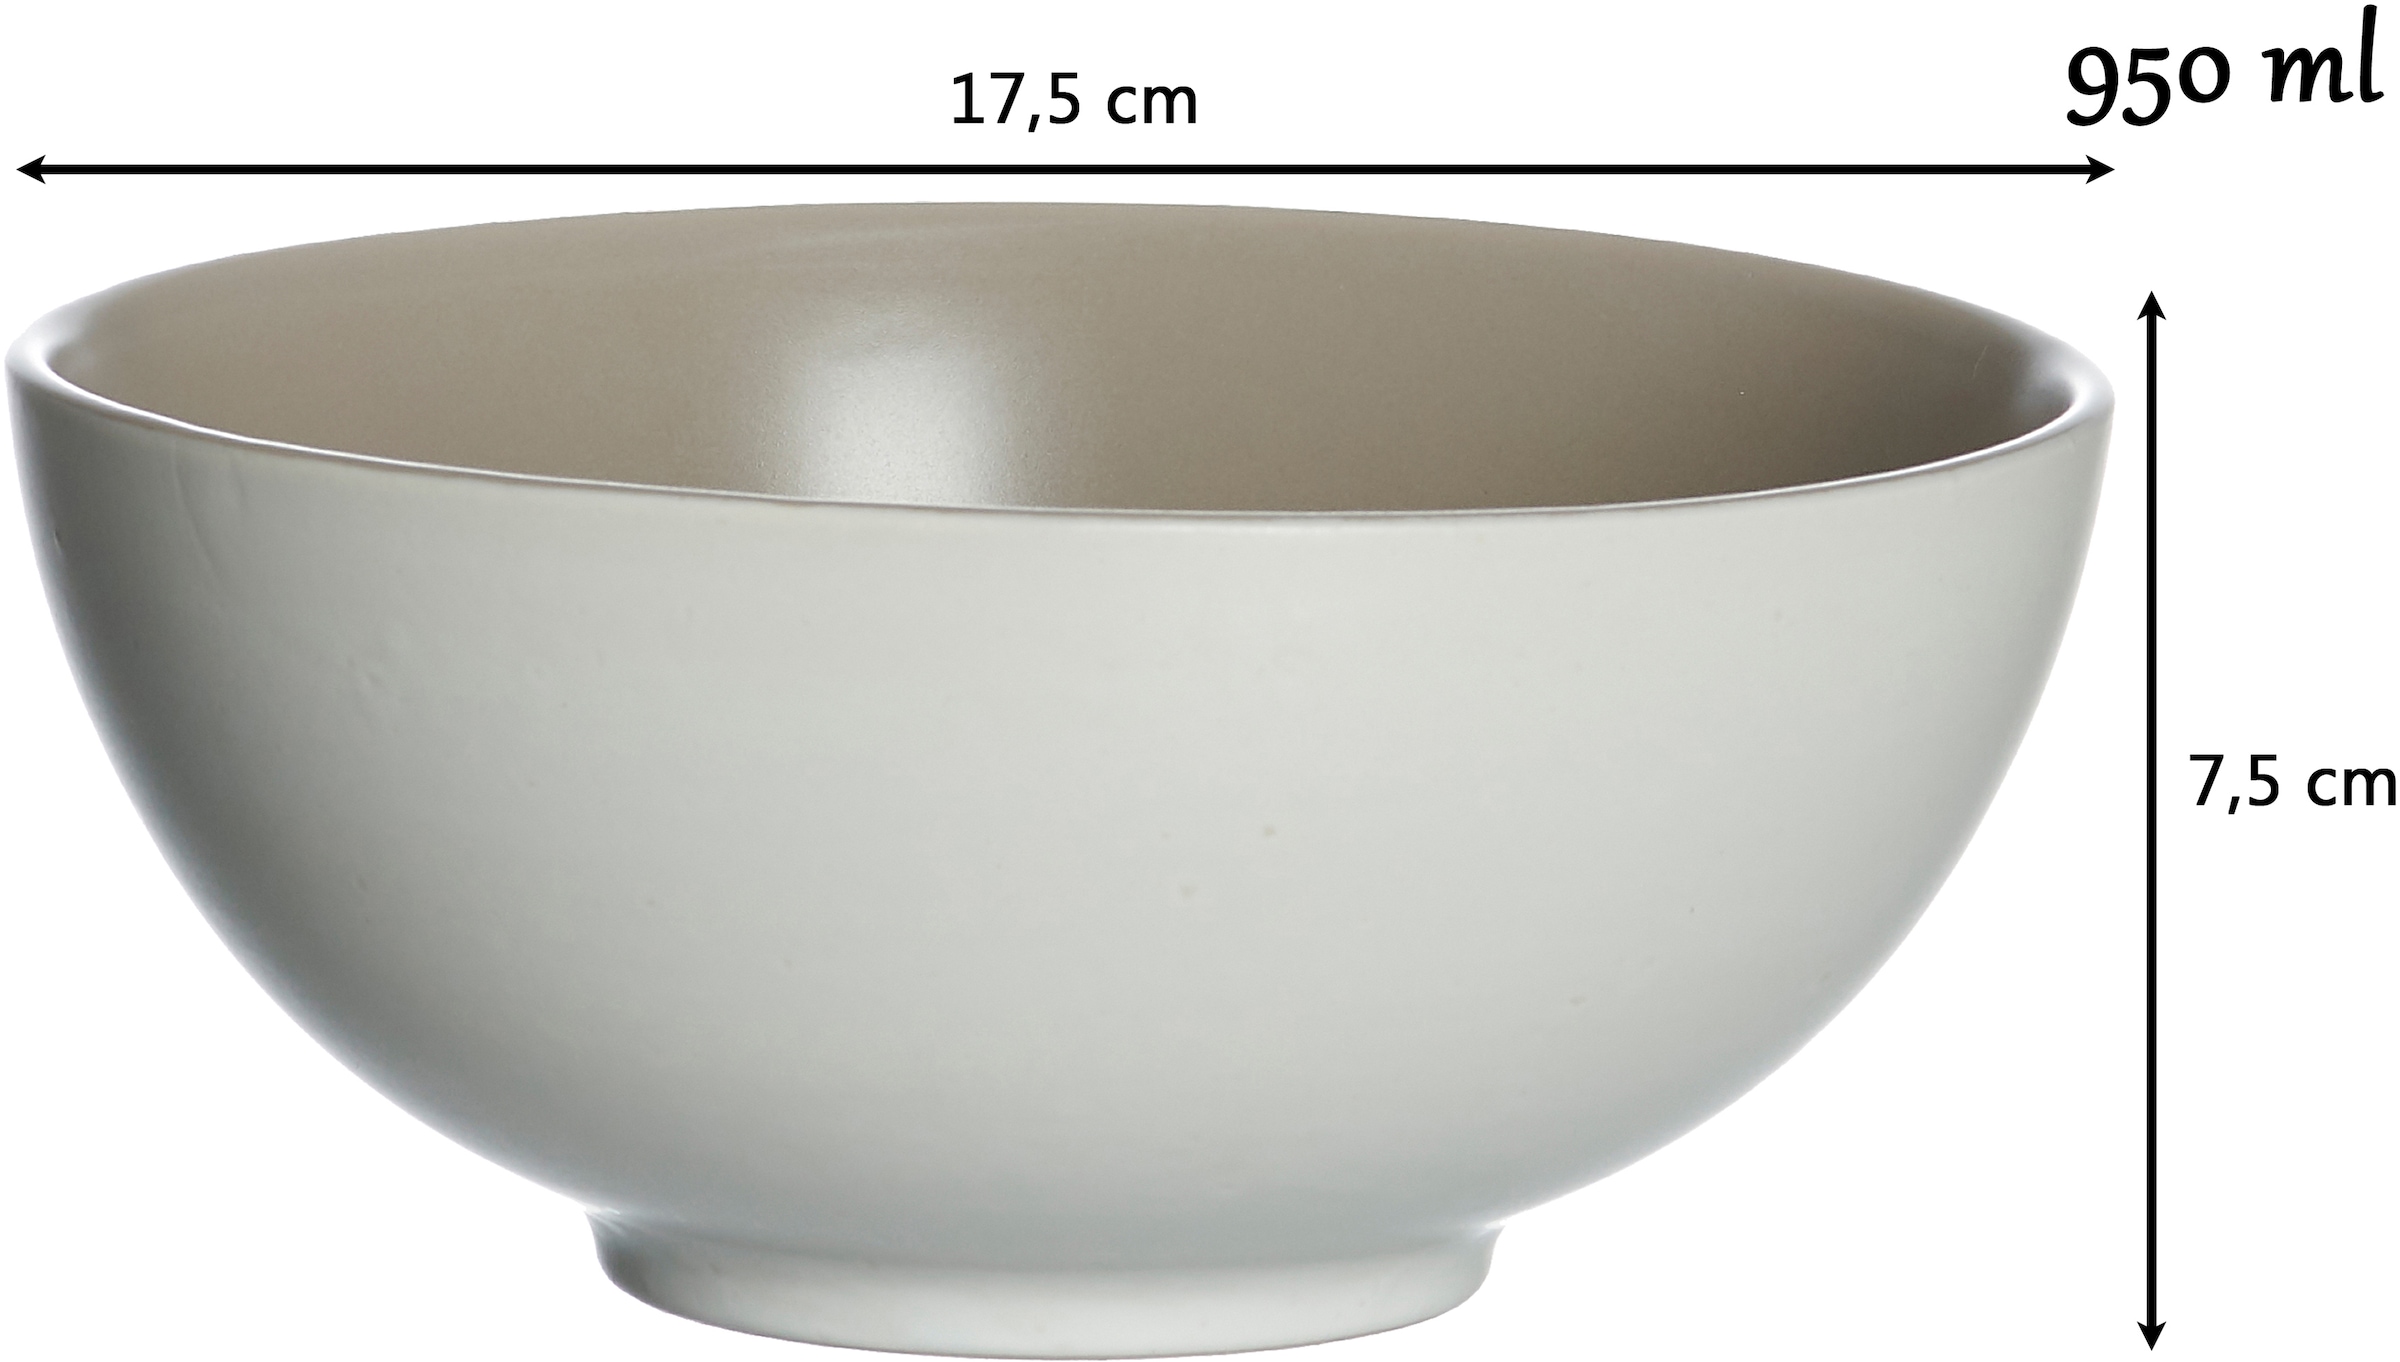 Ritzenhoff & Breker Schale »Morelia«, 2 tlg., aus Steinzeug, Buddha-Bowls, Ø 17,5 cm